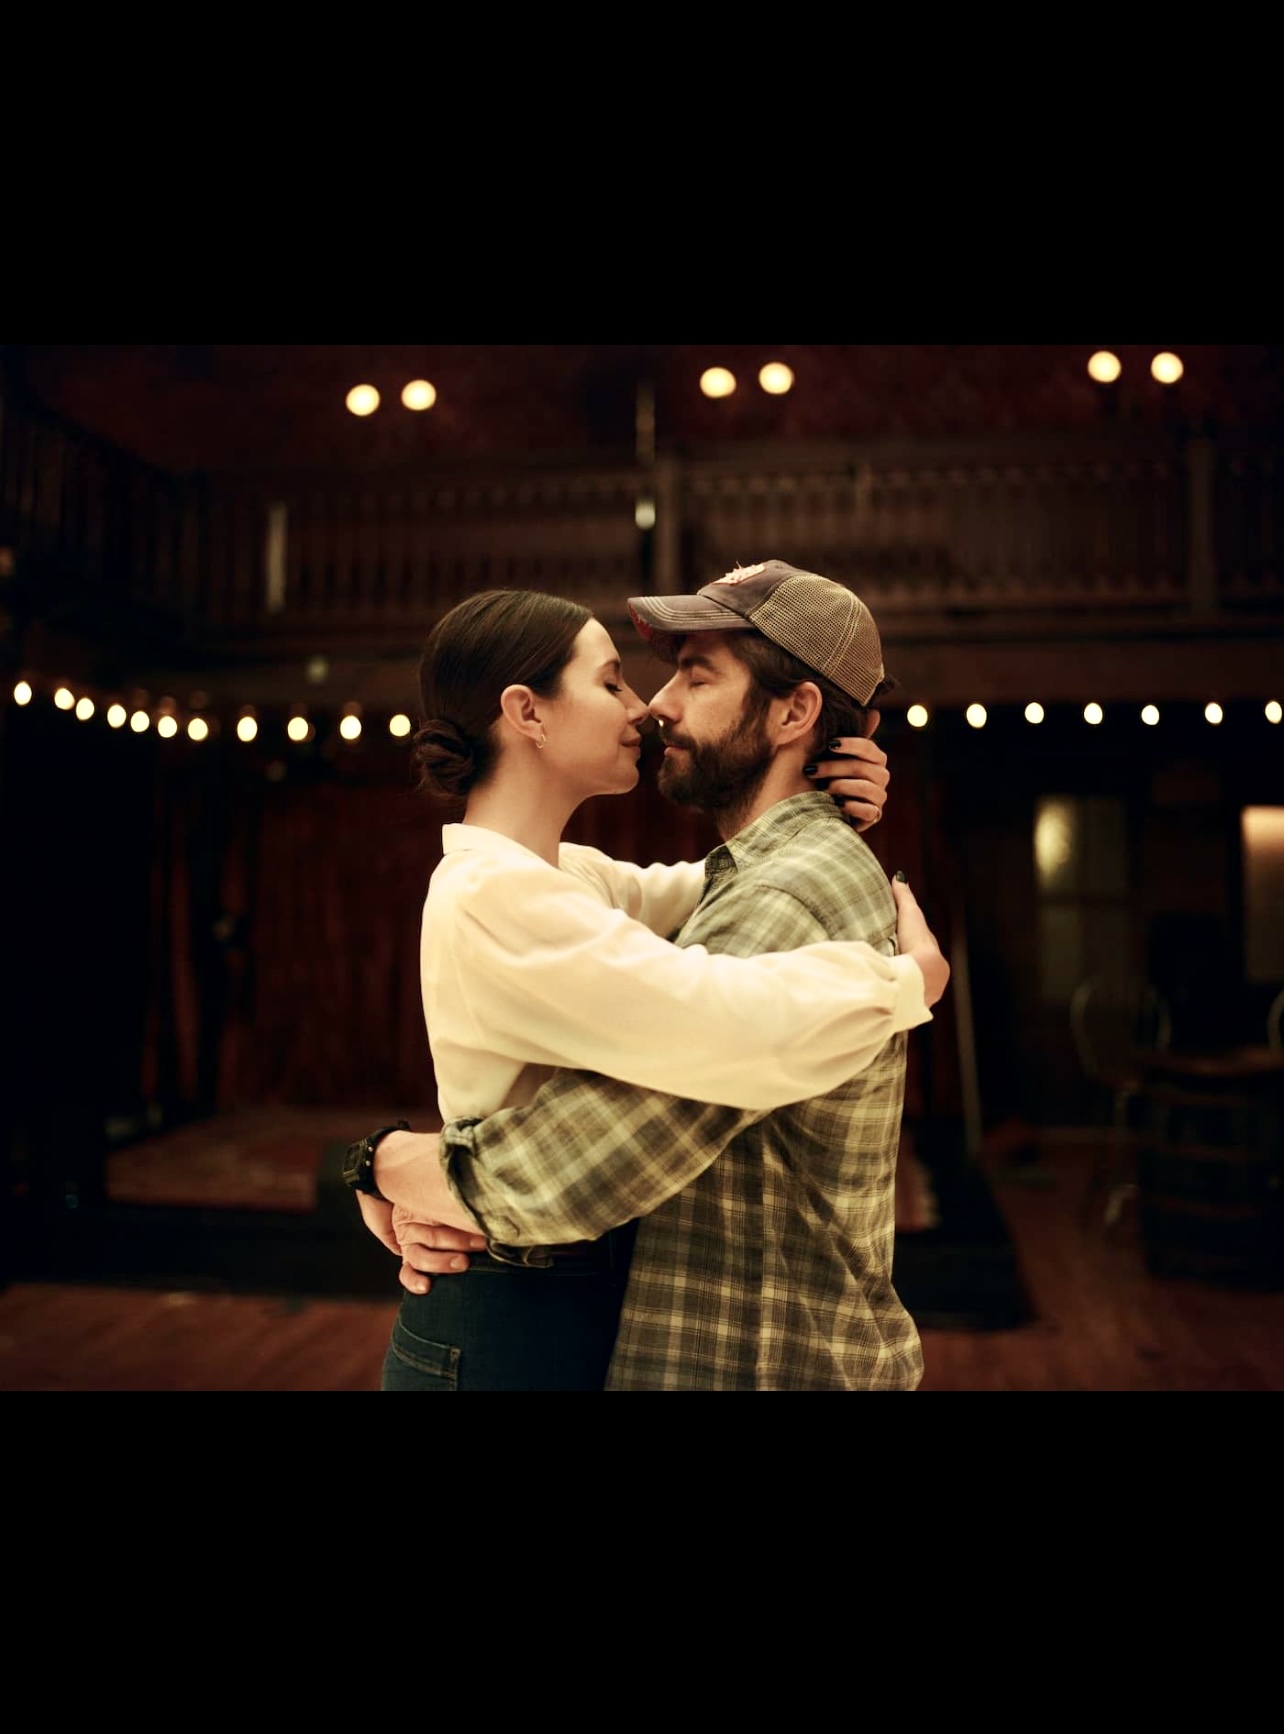 Un homme et une femme s’embrassant dans une pièce faiblement éclairée.